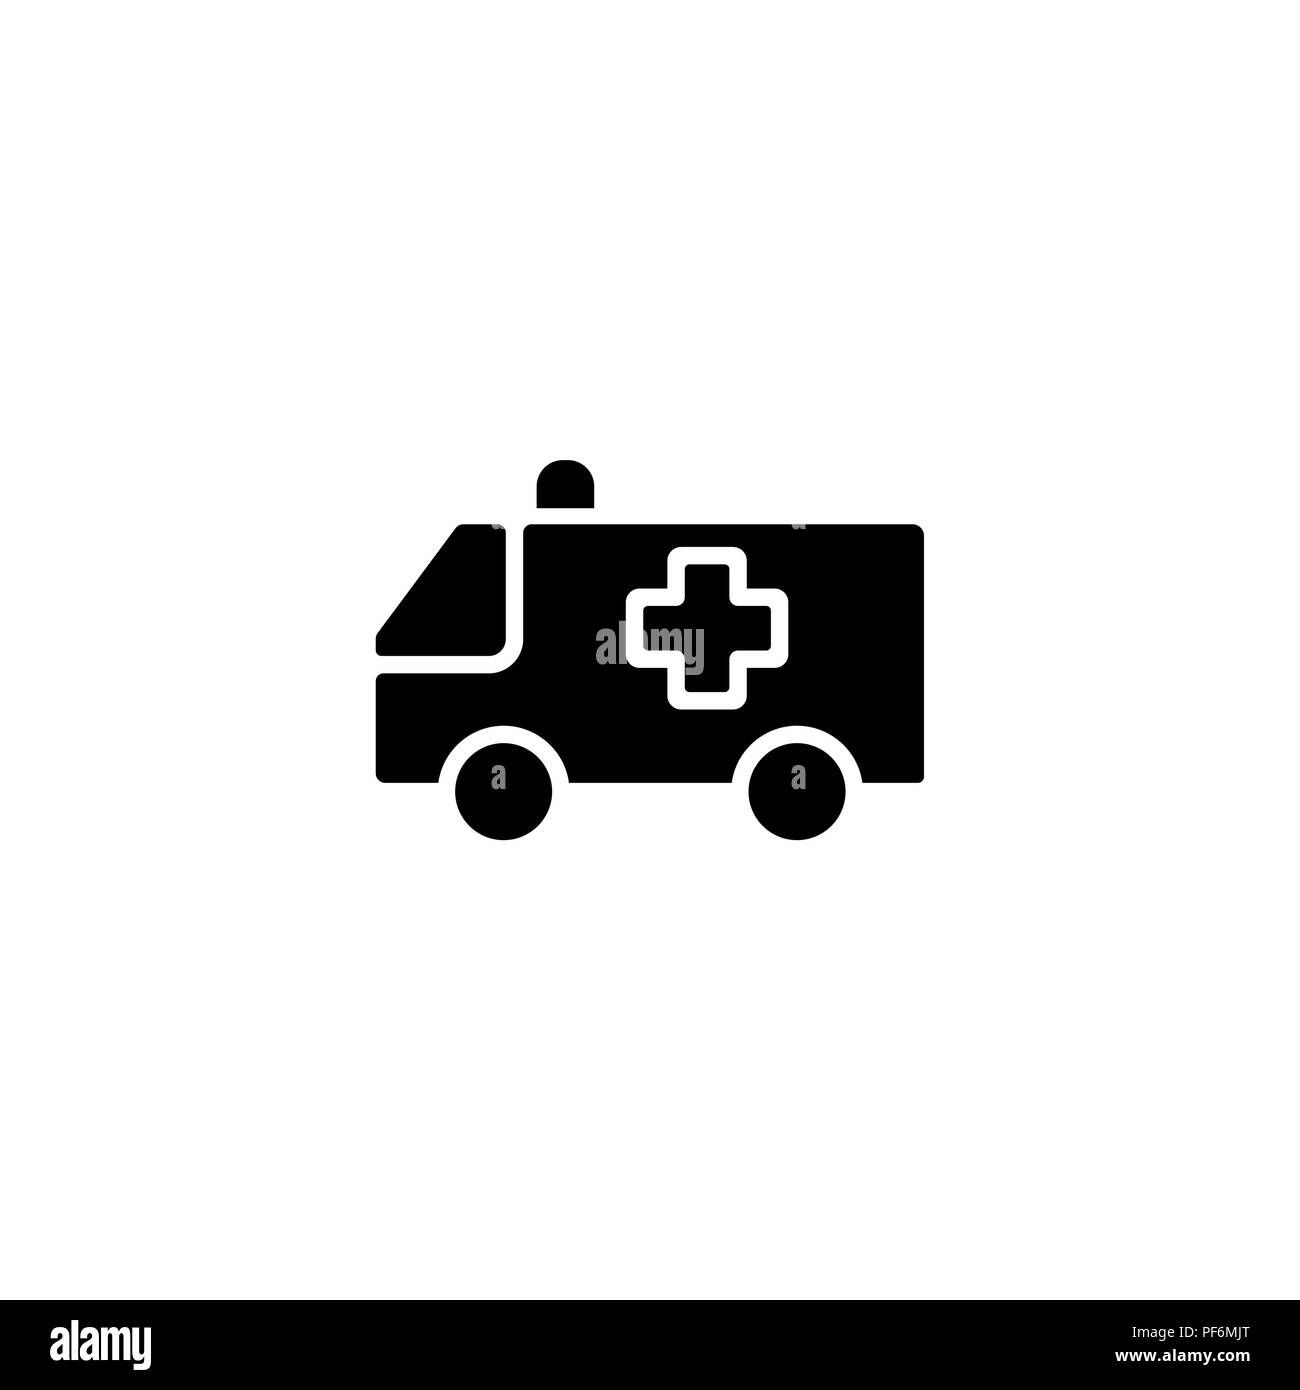 Web icon. Ambulance black on white background Stock Vector